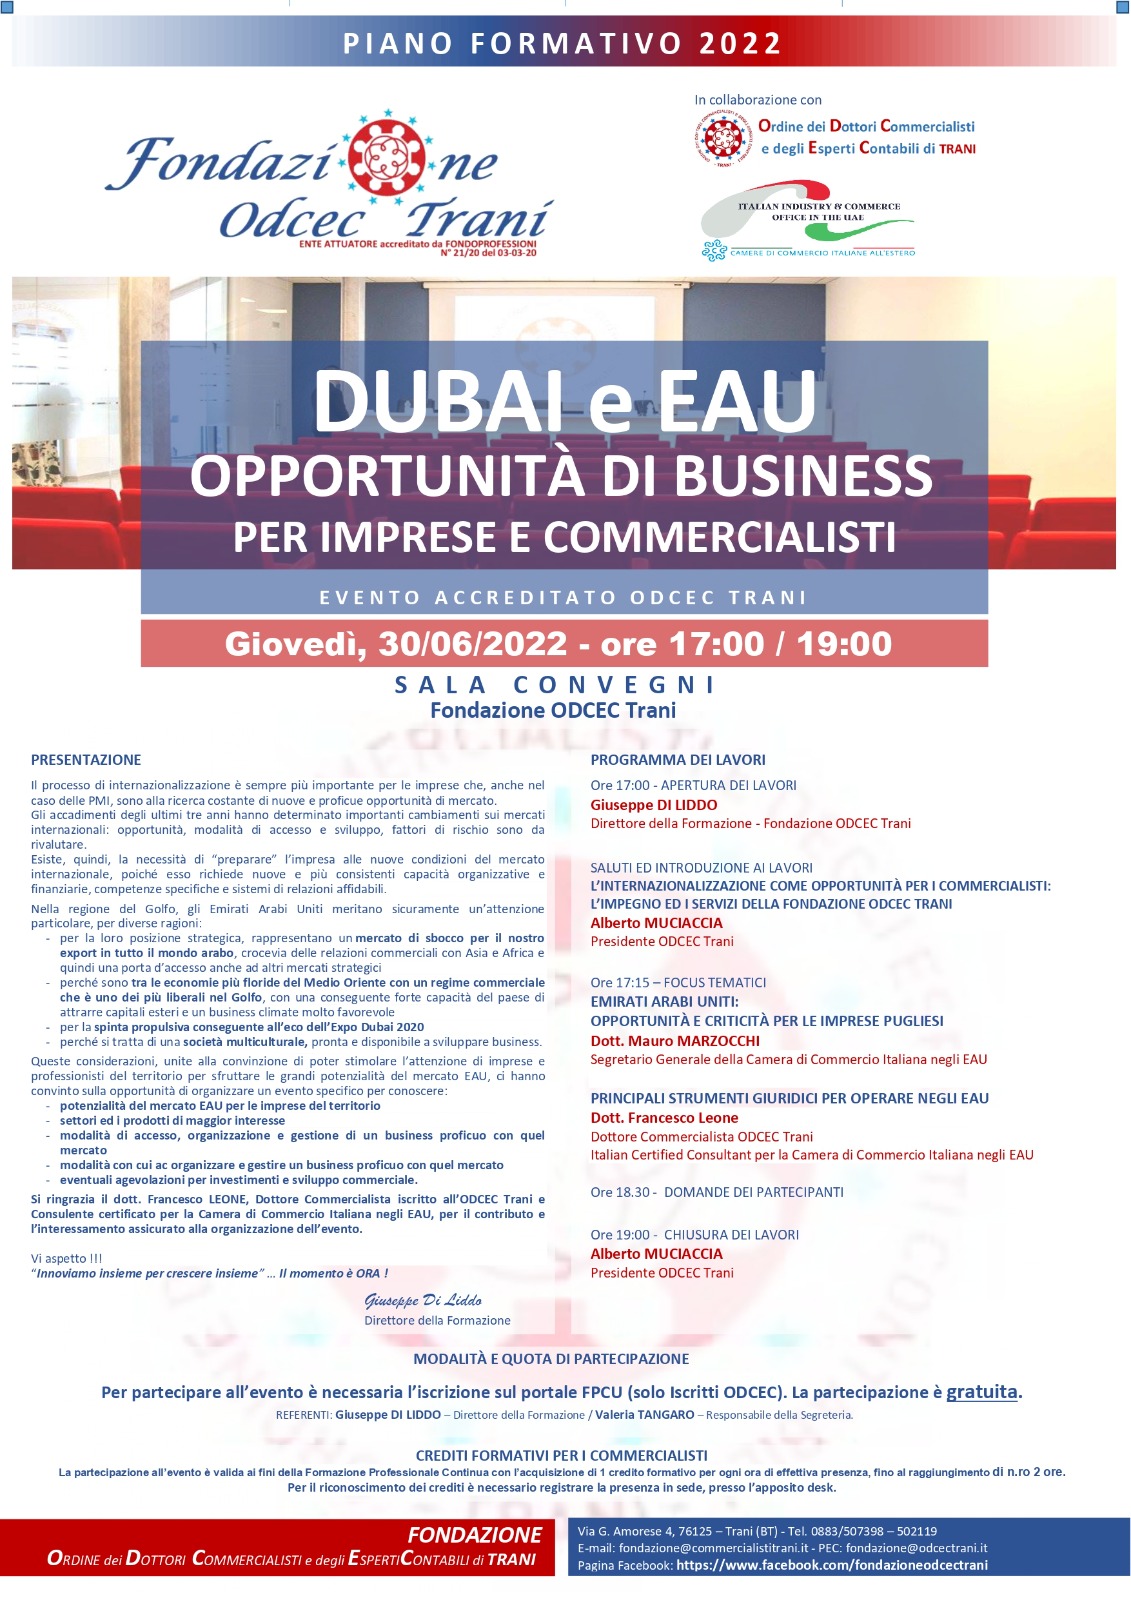 DUBAI E EAU – Opportunità di business per imprese e commercialisti